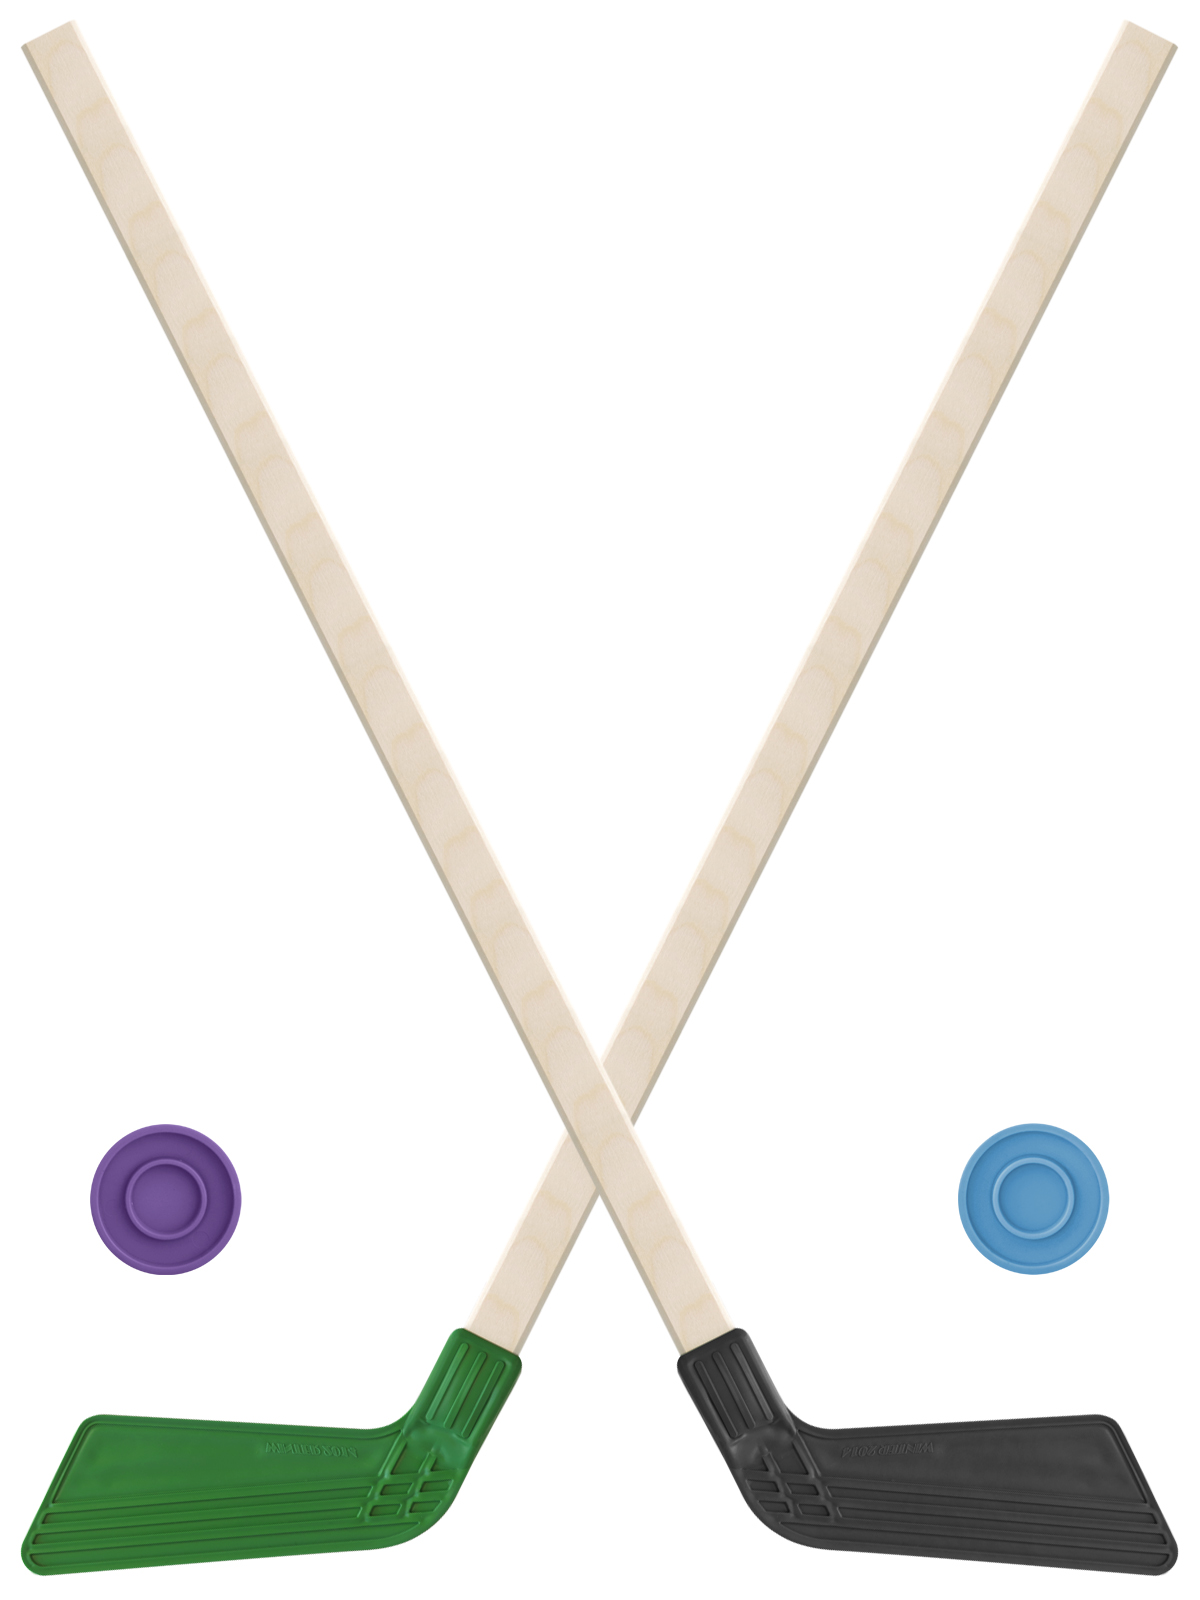 Детский хоккейный набор Задира-плюс клюшка хоккейная детская 80см (зел и черн) 2шт +2шайбы клюшка флорбольная oxdog sense hes 25 fp 108 round mbc правый